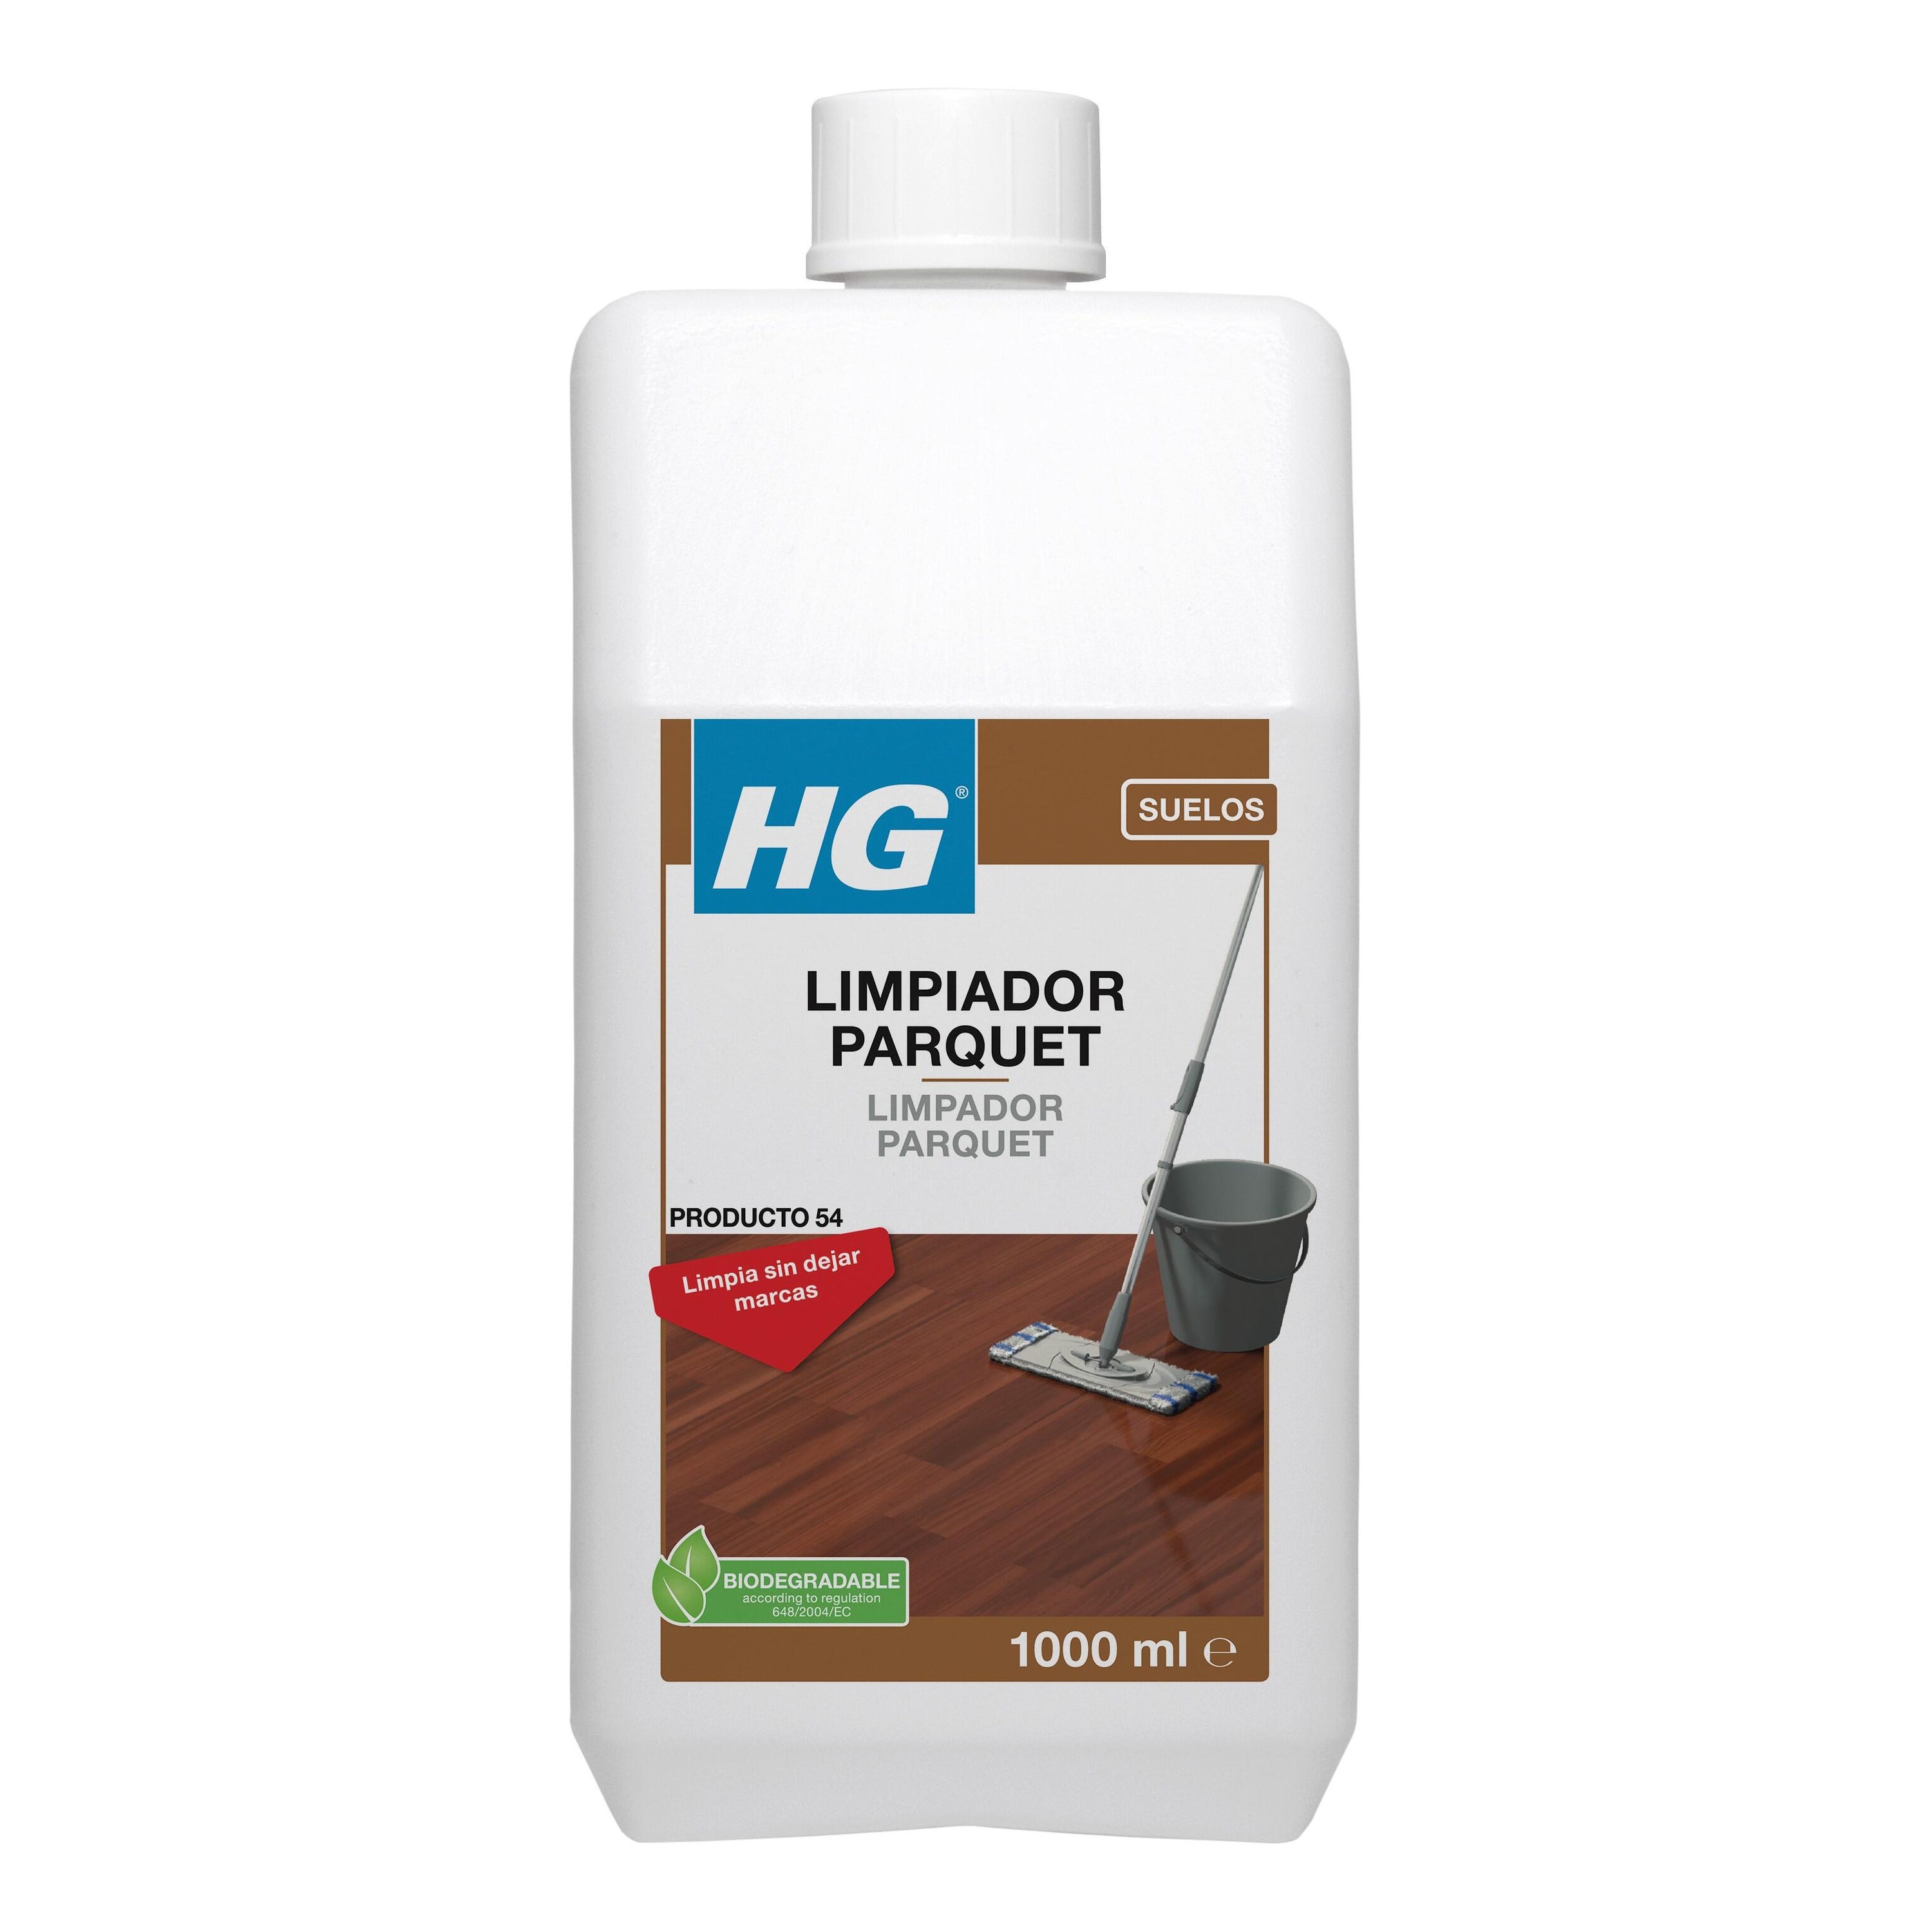 Limpiador uso diario de parquet HG de 1L